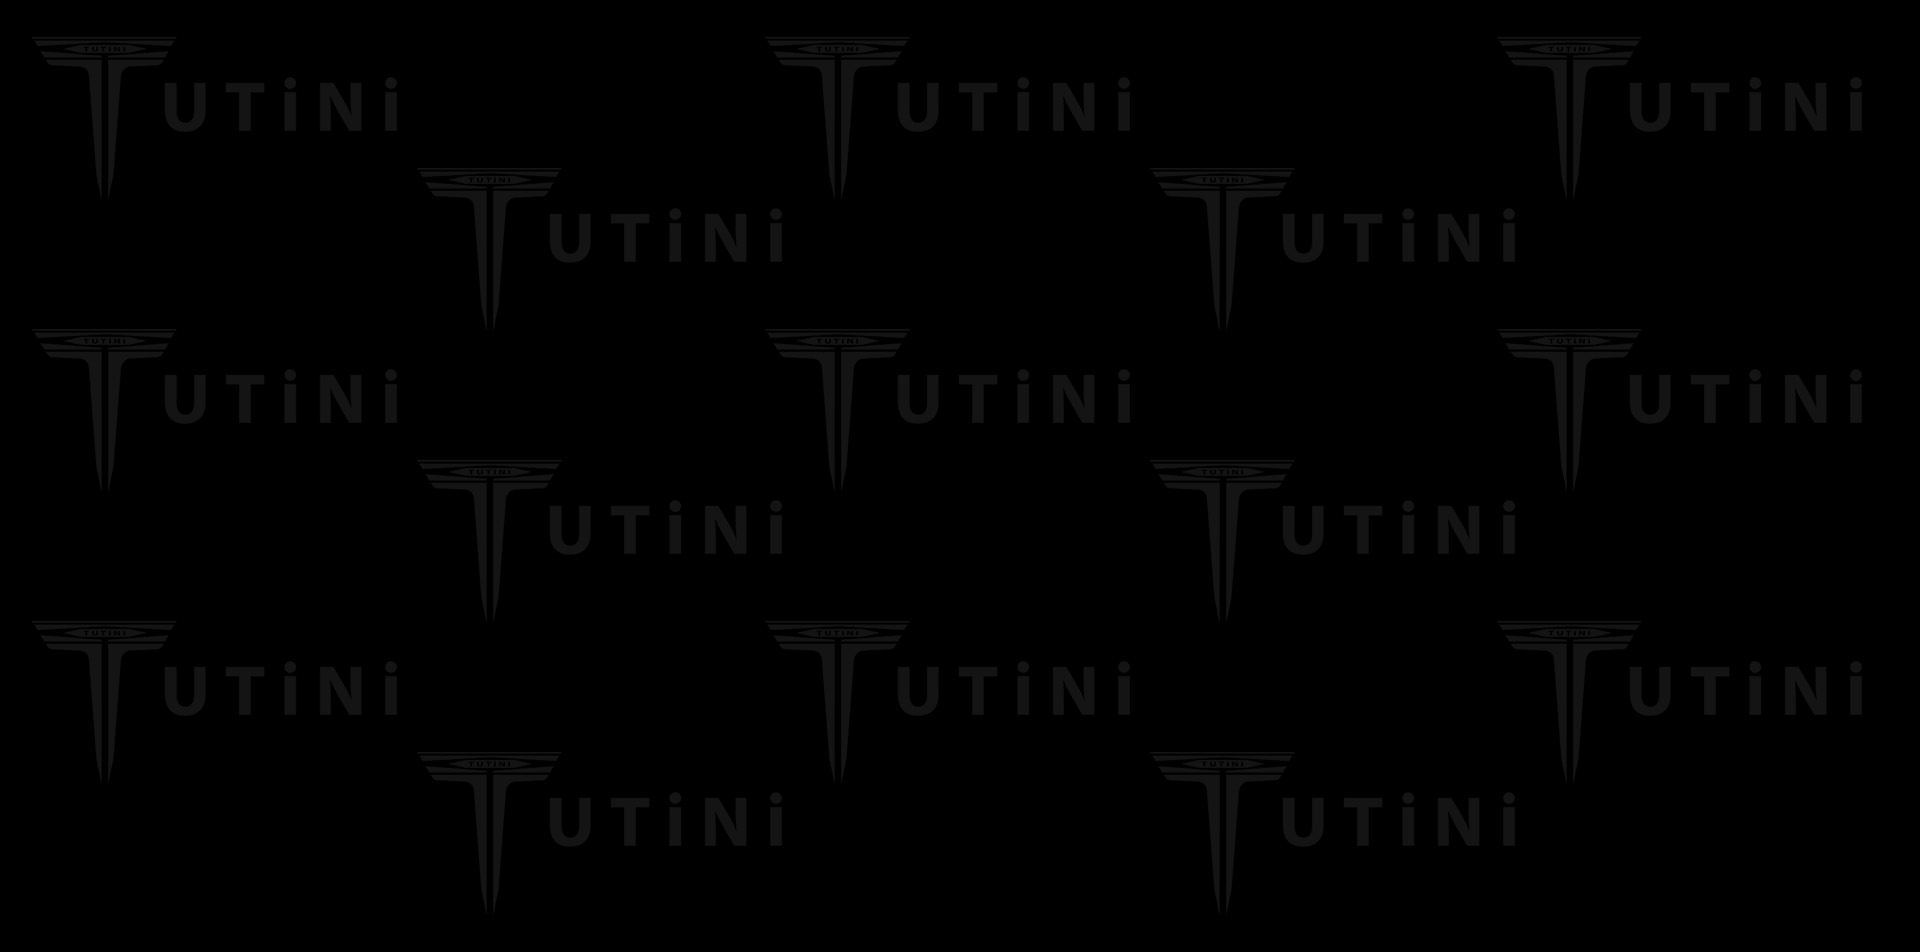 Lorenzo Tutini Exclusive